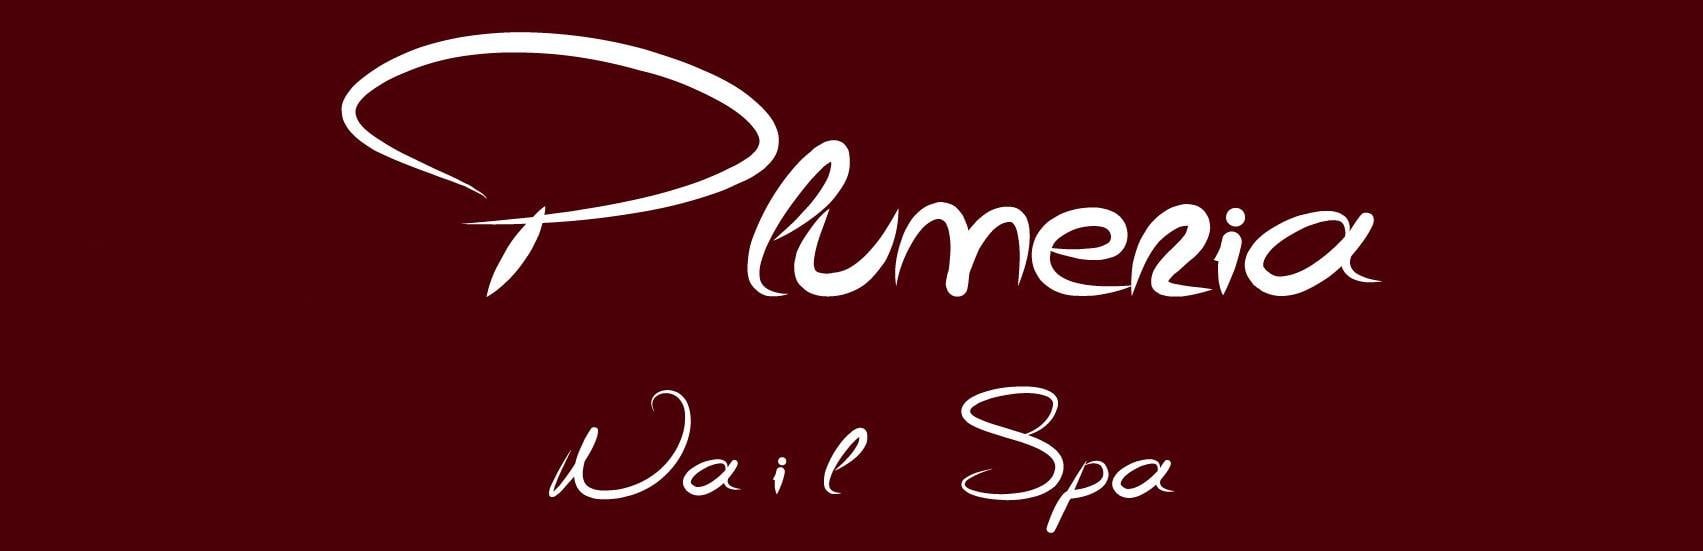 Plumeria Nails & Spa